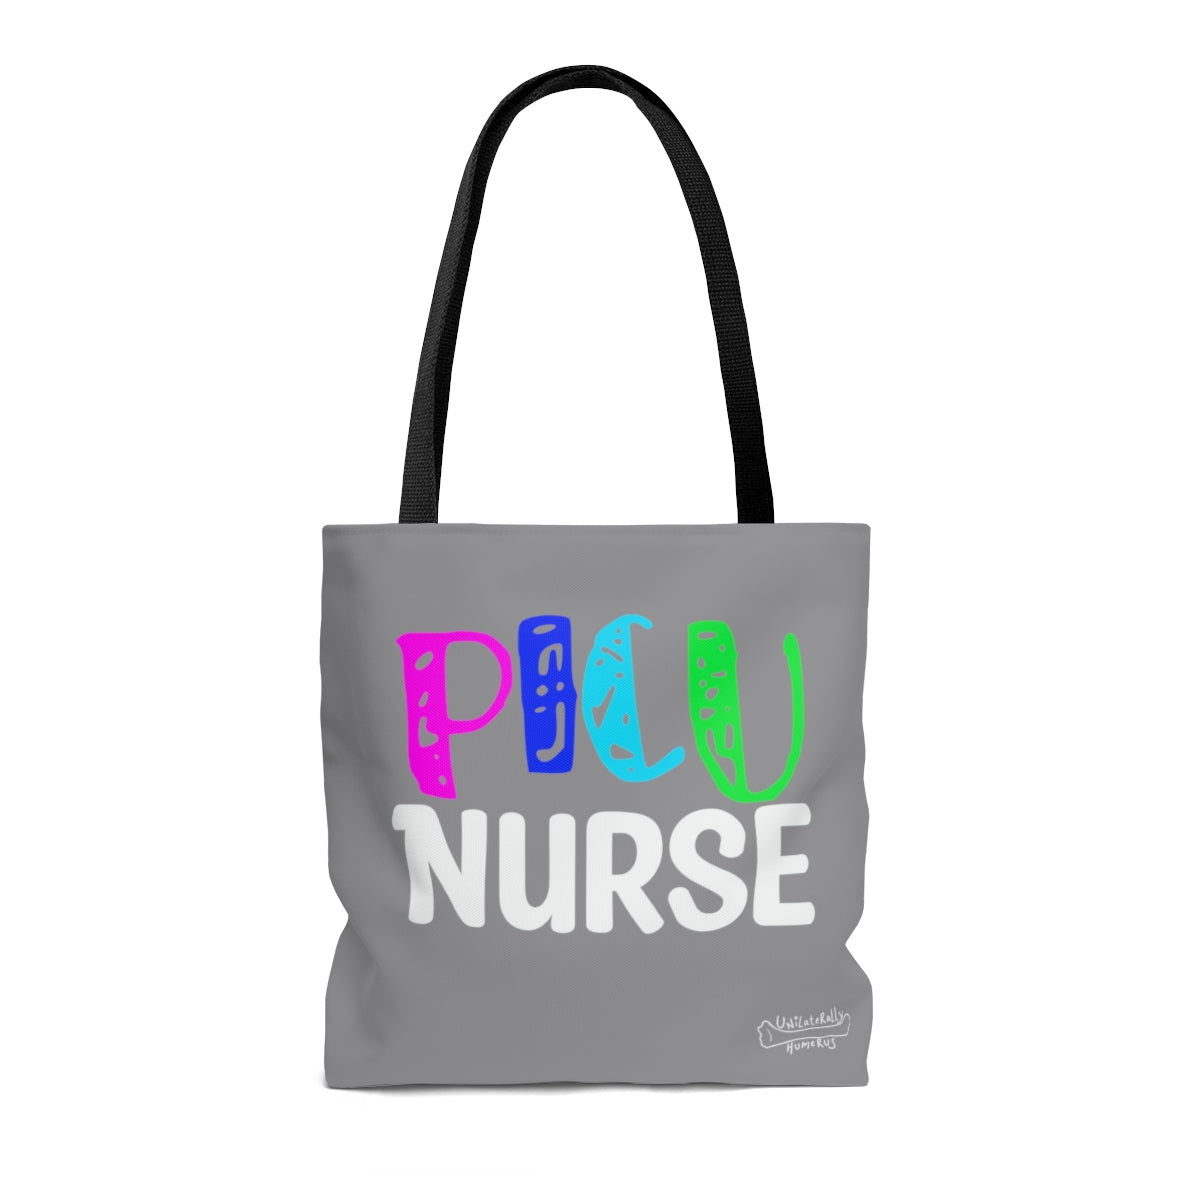 PICU Nurse Tote Bag